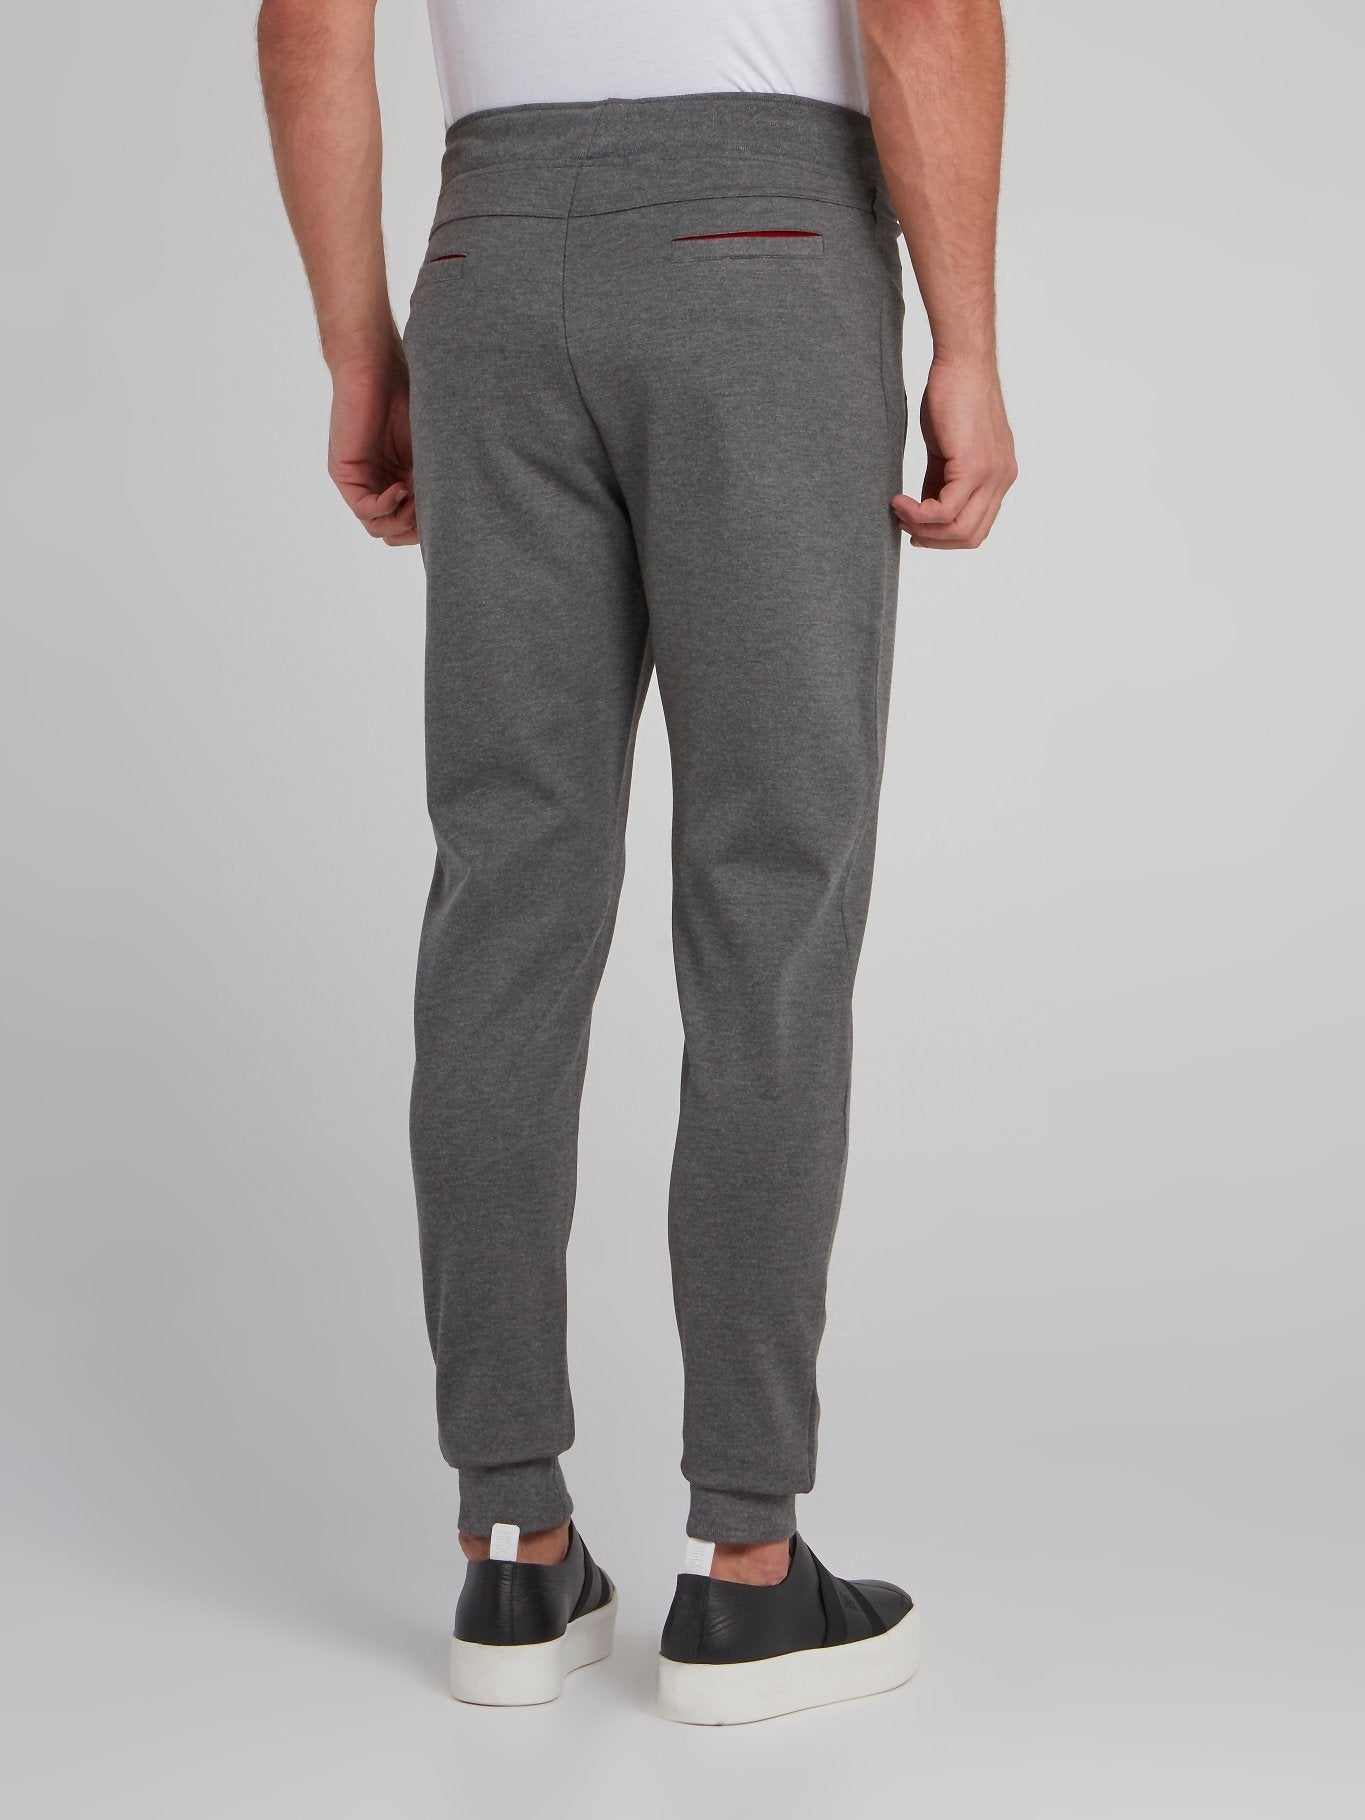 Grey Front Pocket Track Pants